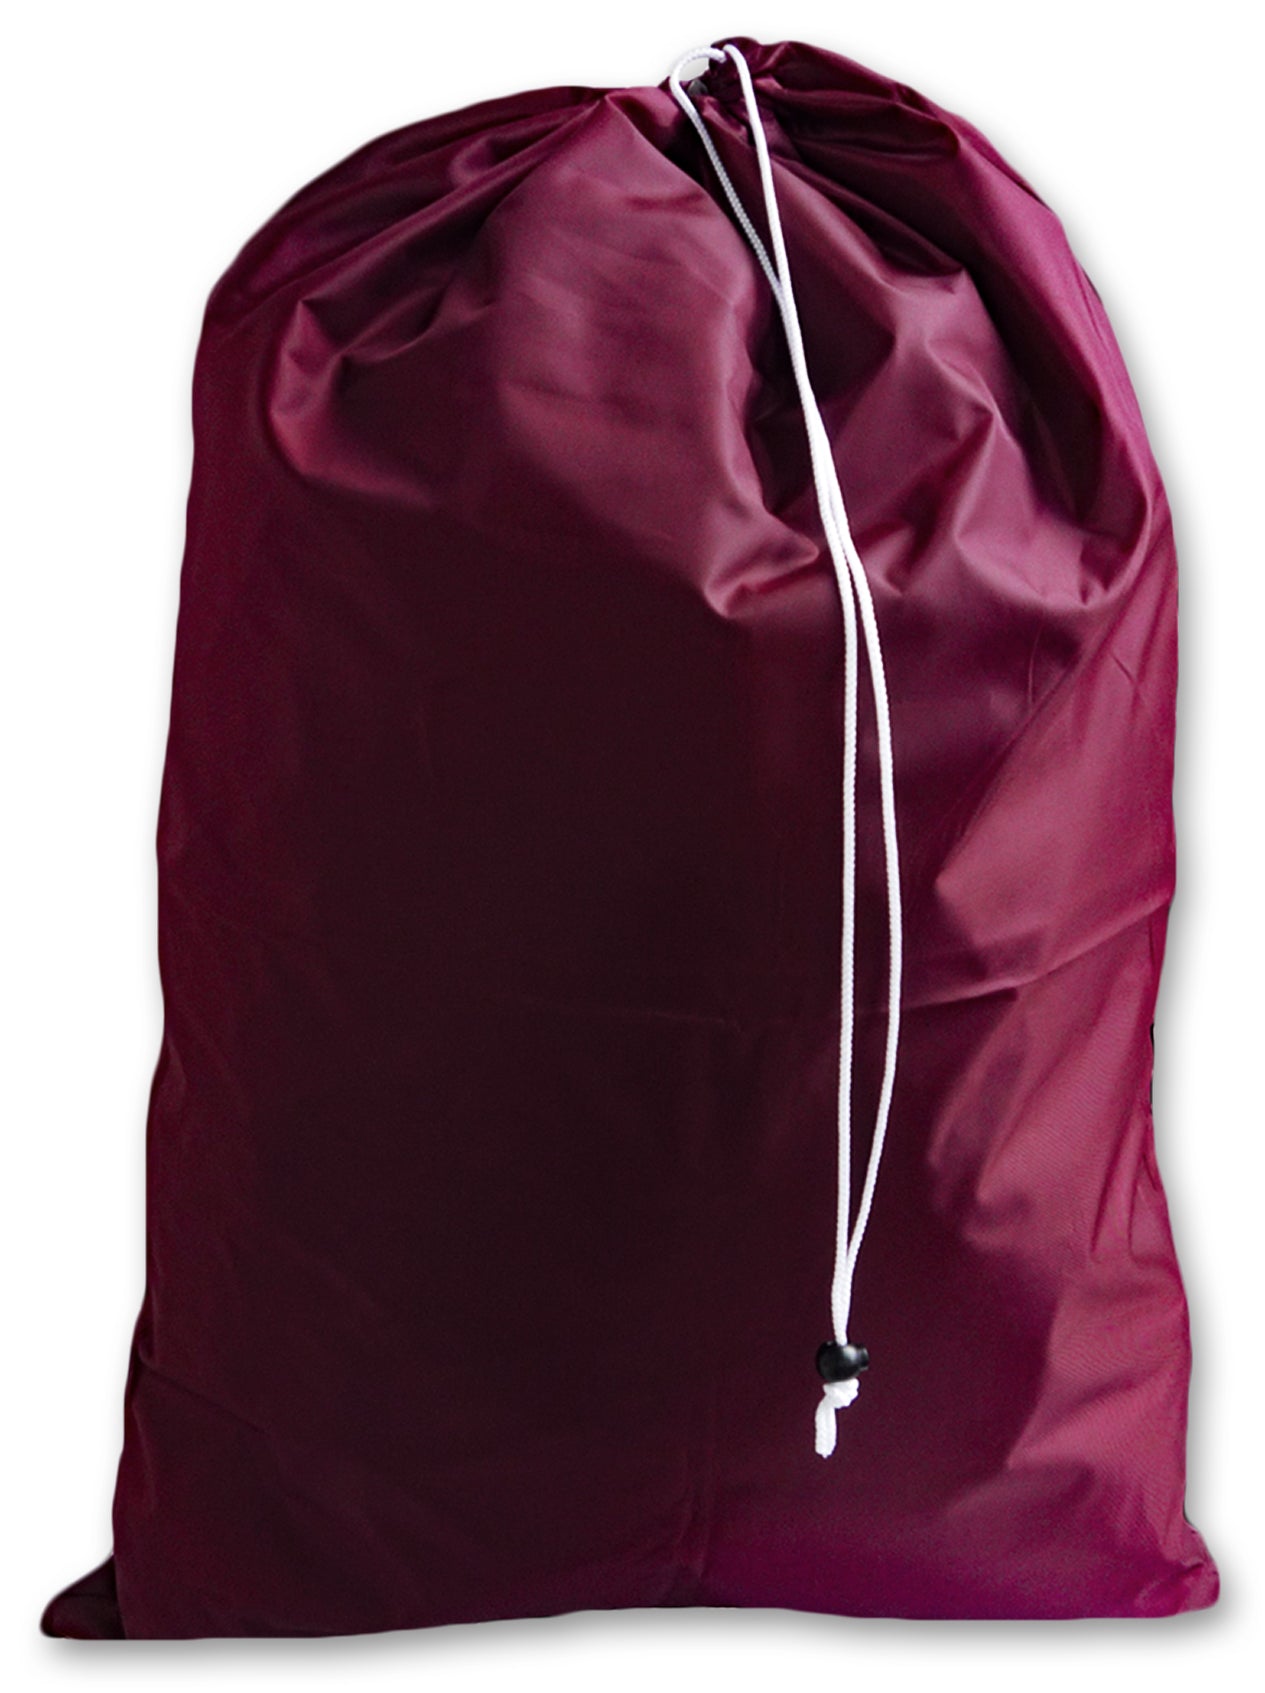 Medium Drawstring Laundry Bag, Burgundy